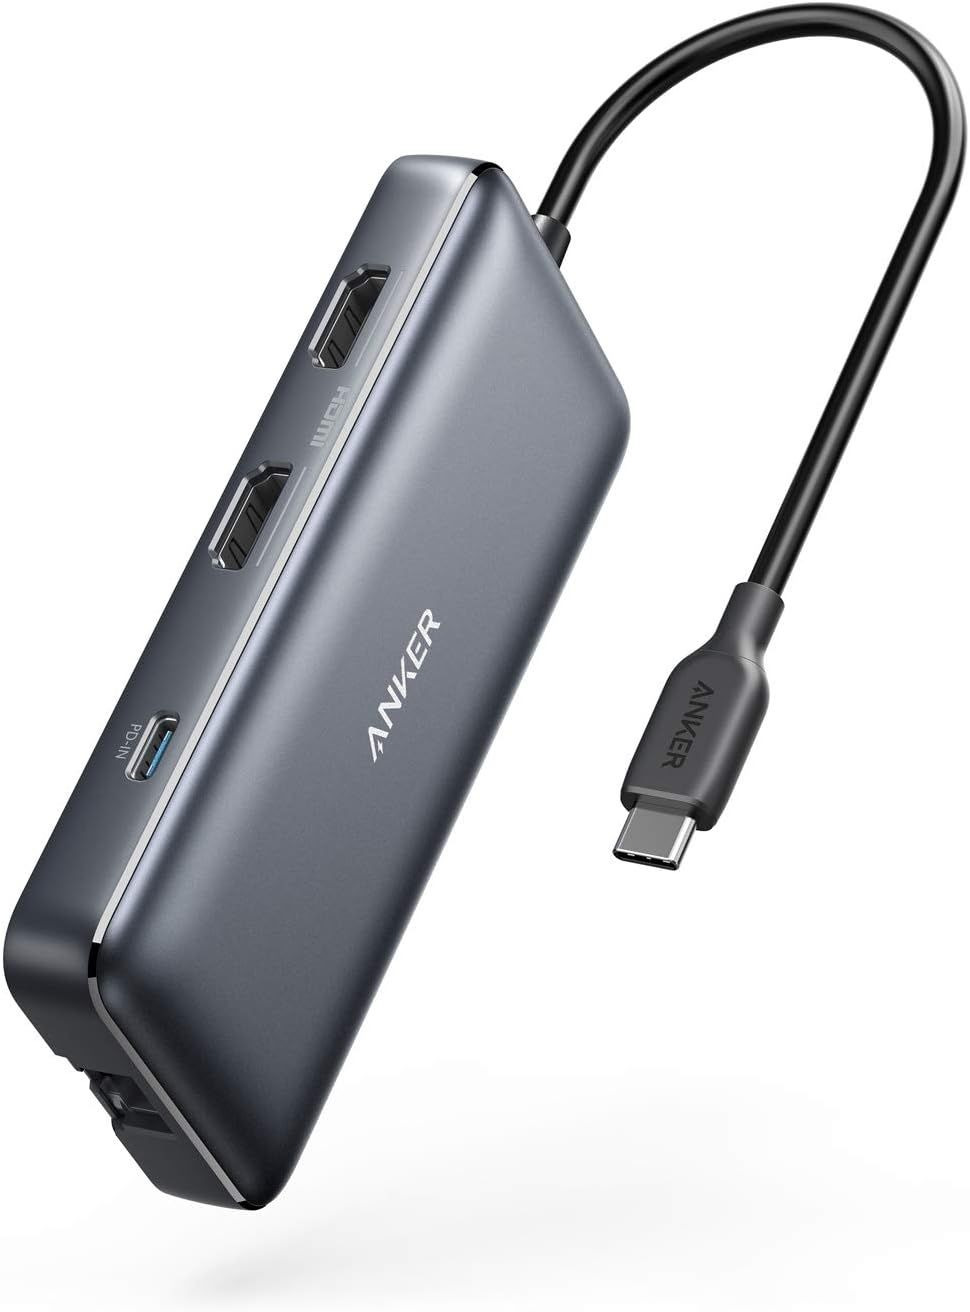 Anker 553 USB-C Hub, 8-in-1 USB C Dock, Dual 4K HDMI C to Adapter, 1... 